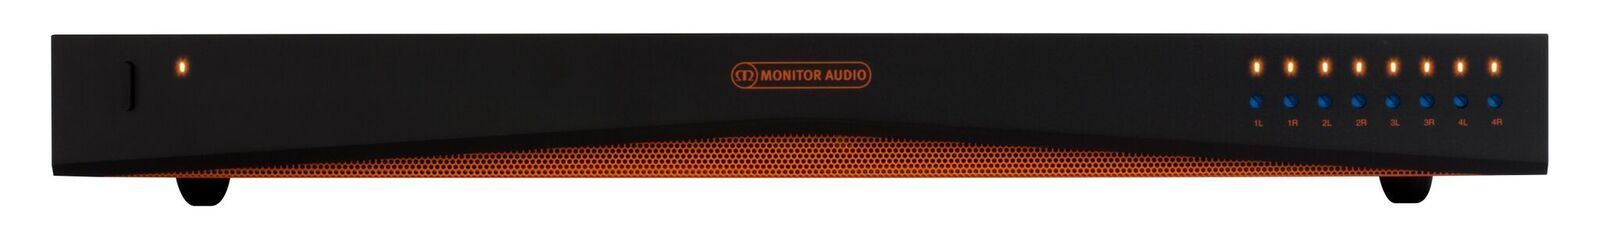 Monitor Audio IA150-8C päätevahvistin